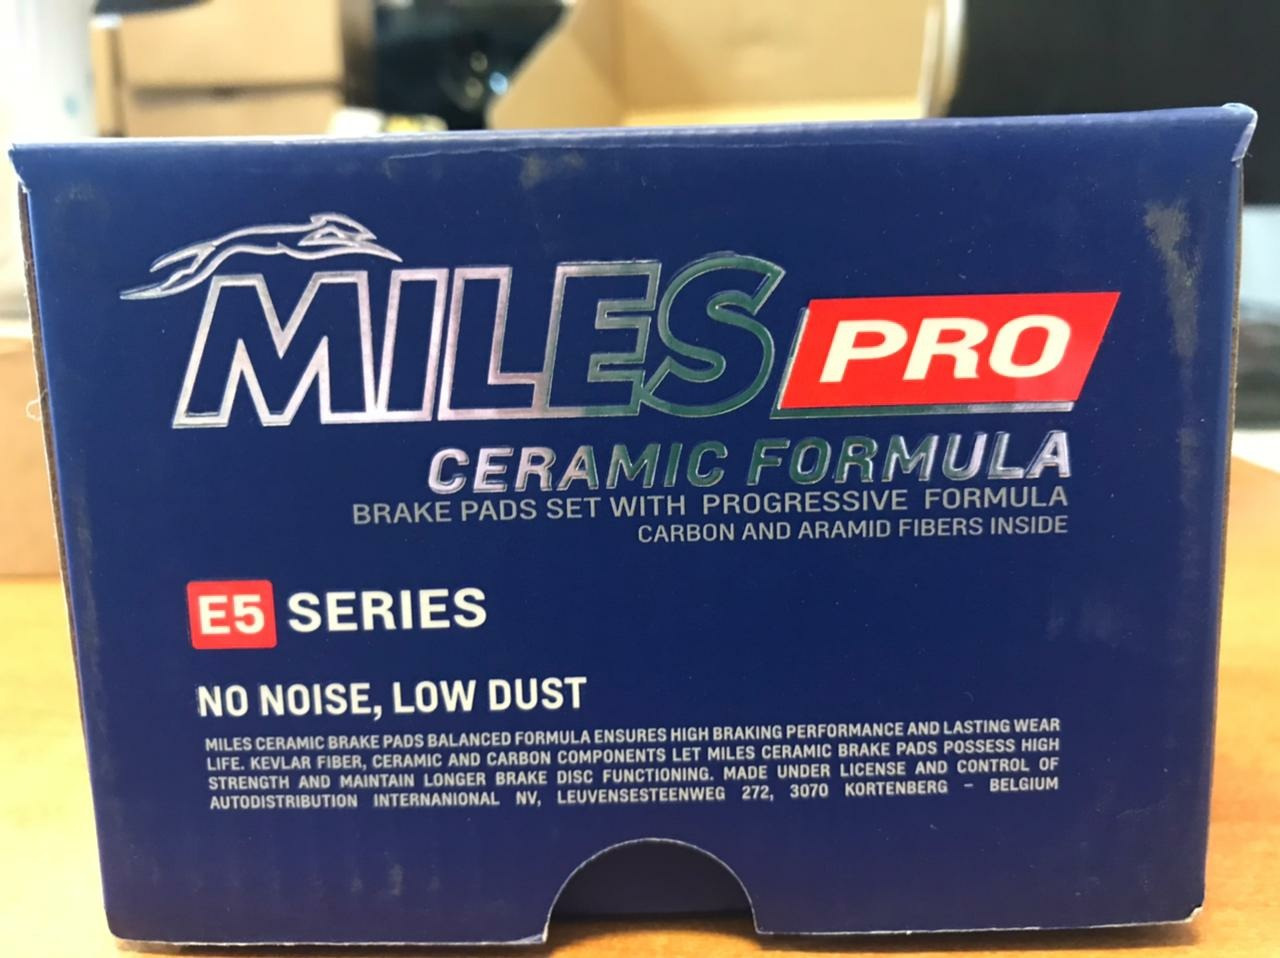 Miles ceramic. Miles Ceramic цена. Miles Pro Ceramic Formula отзывы.